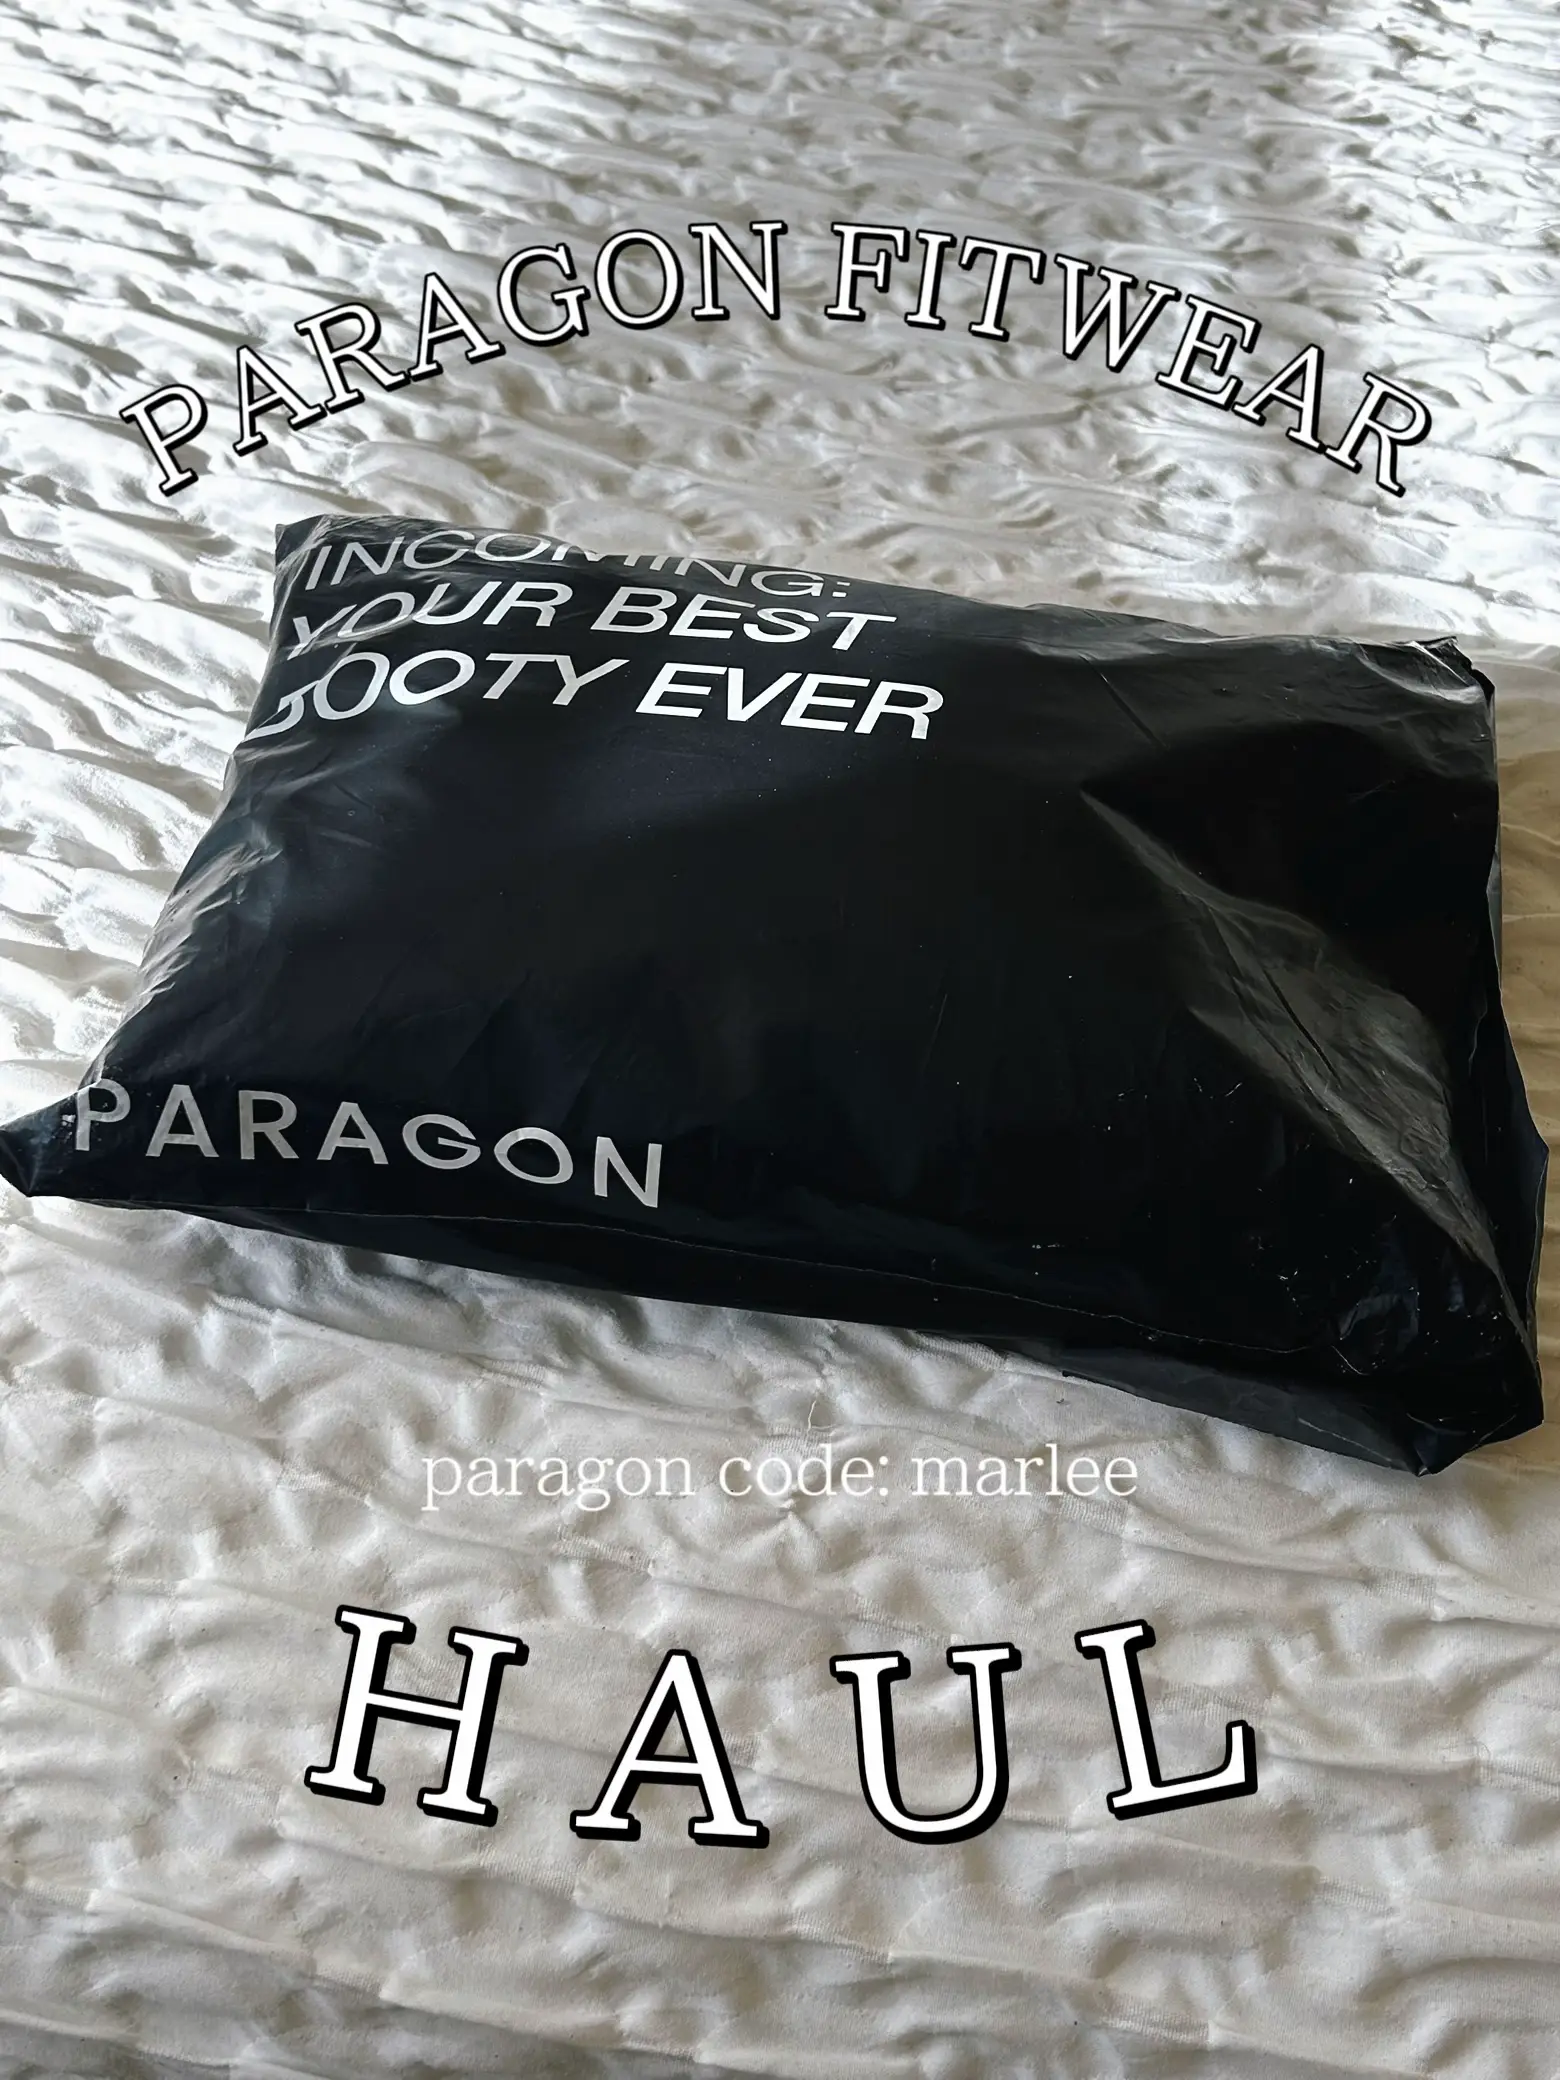 paragon fitwear - Lemon8 Search